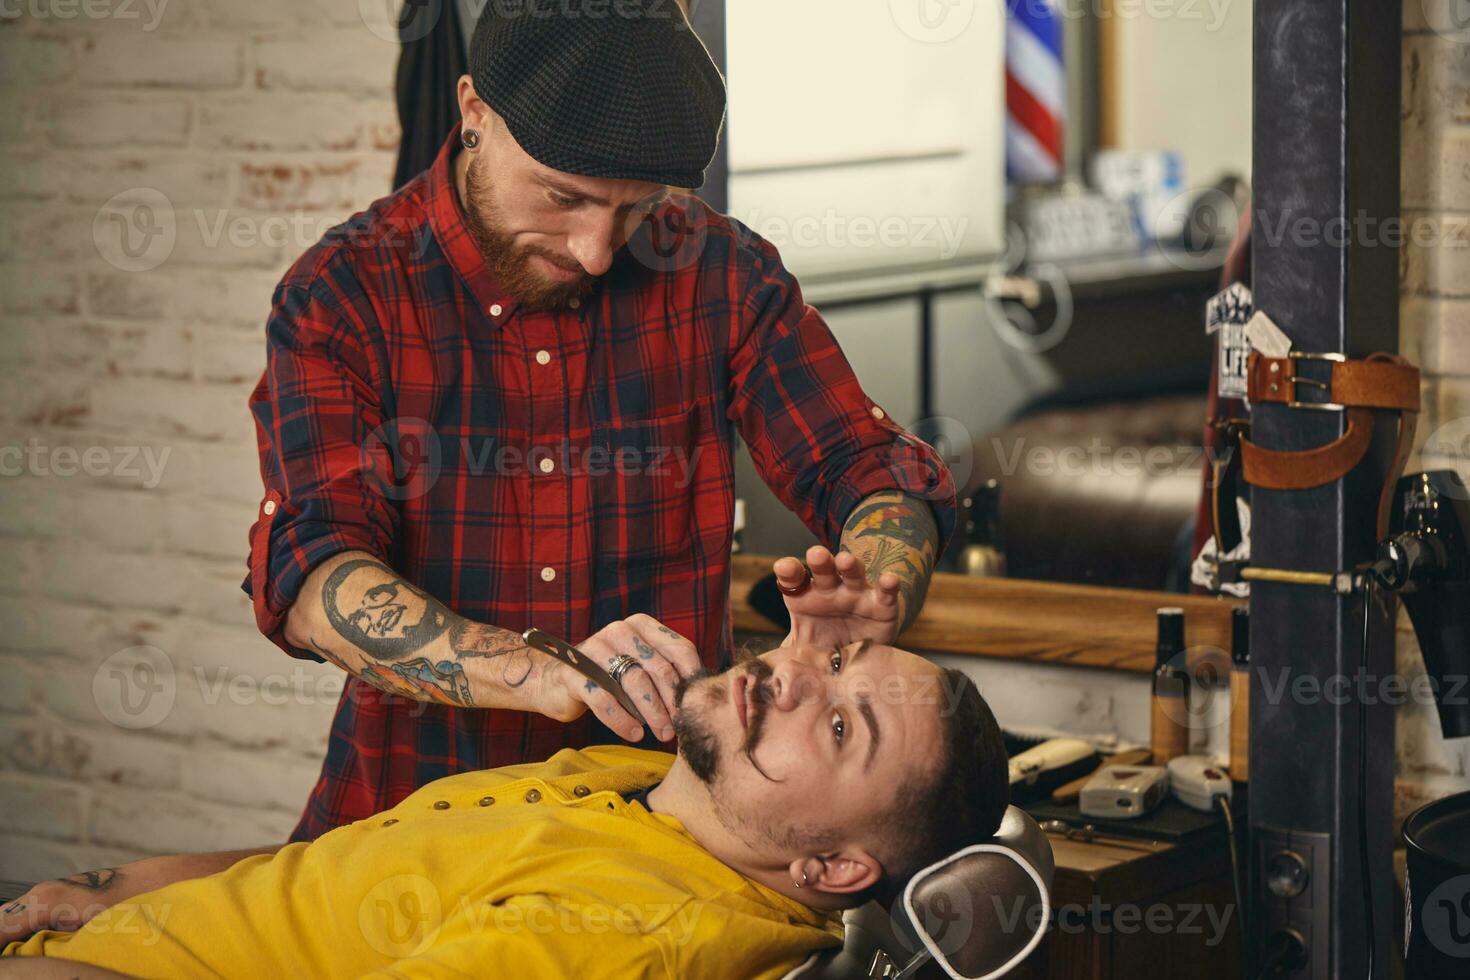 klient under skägg rakning i barberare affär foto